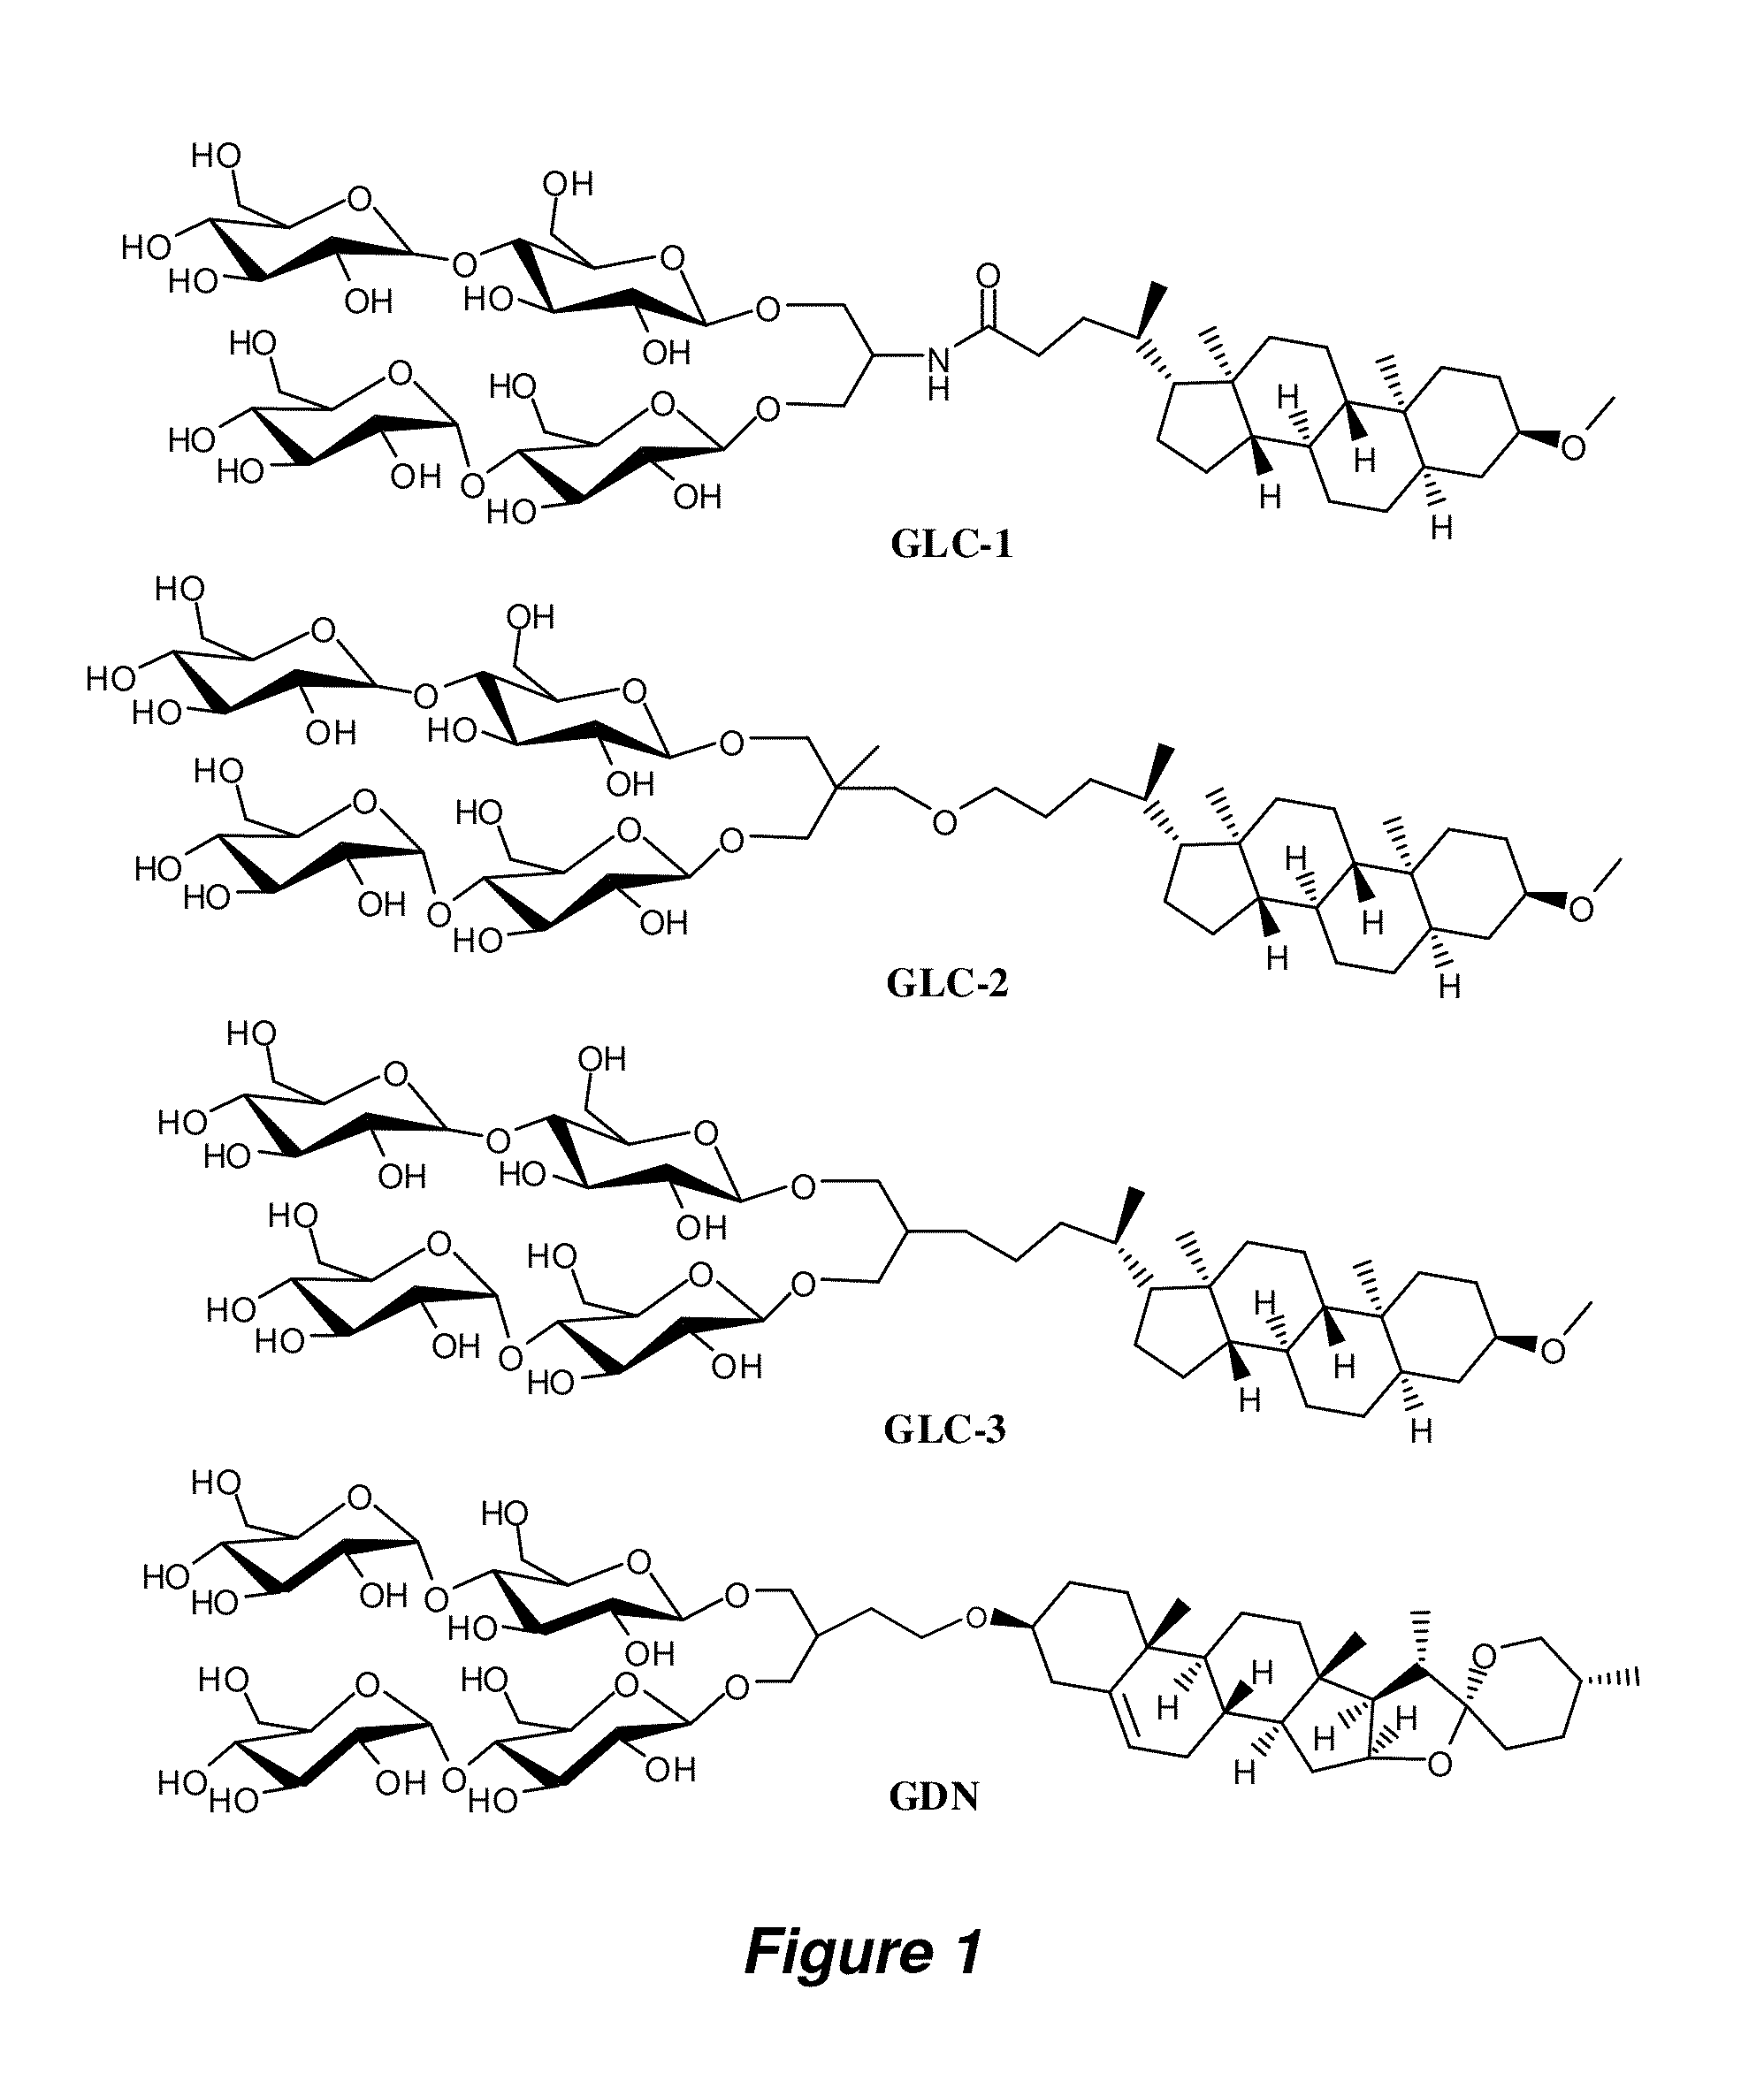 Amphiphilic compounds